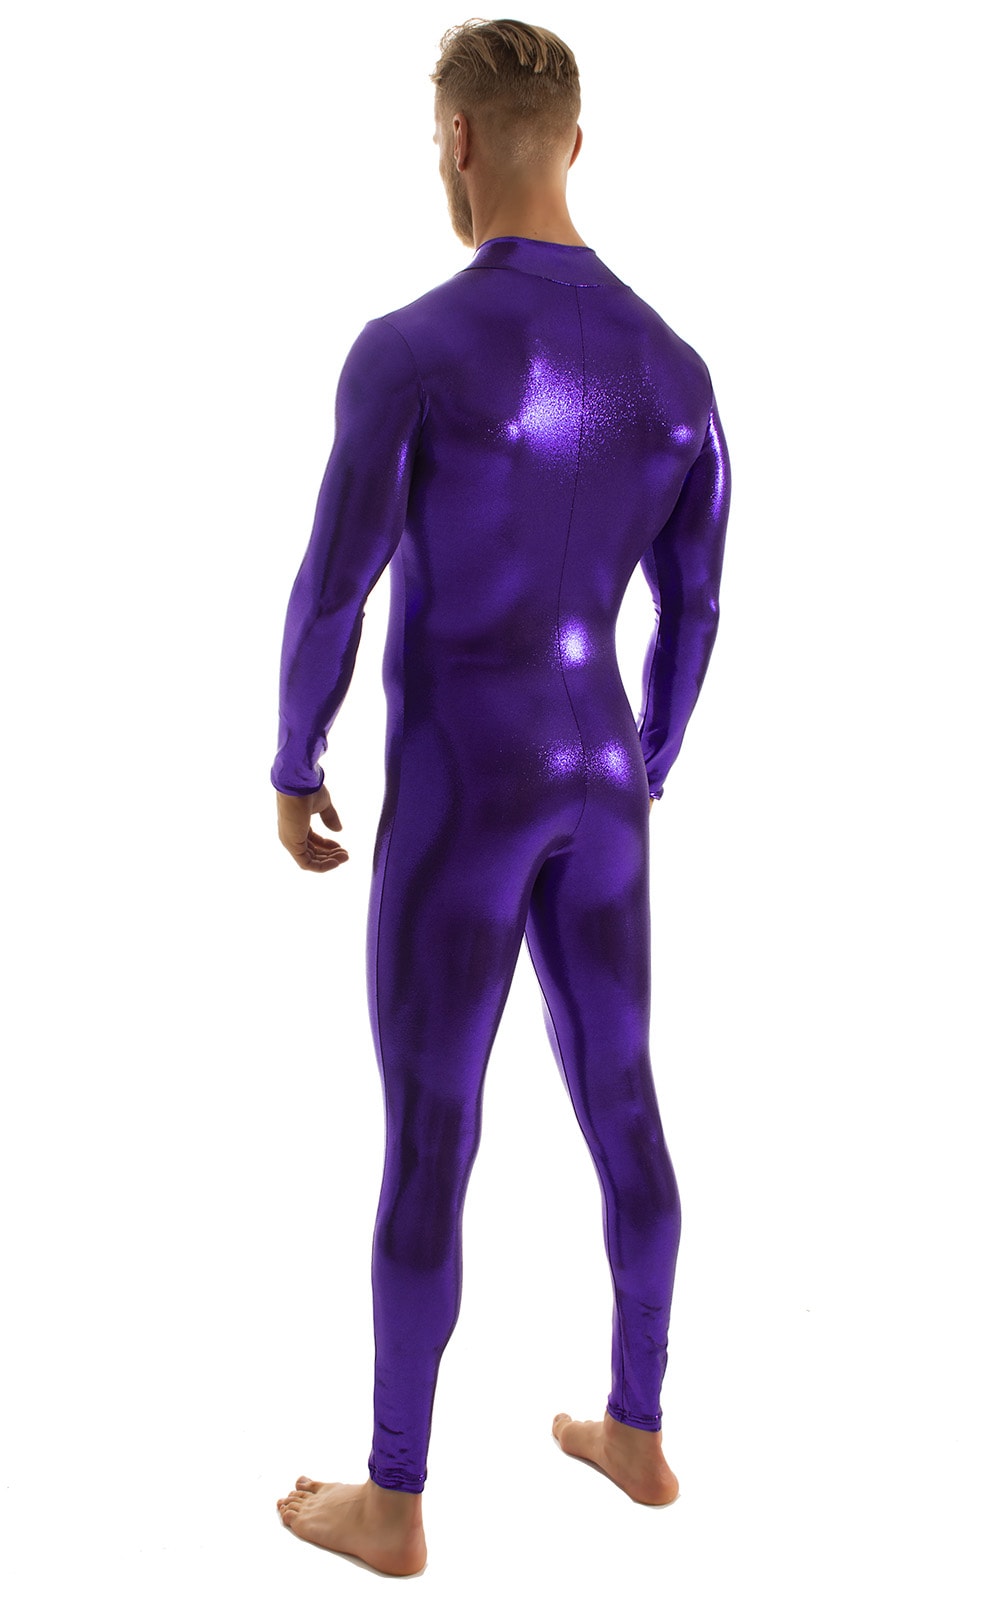 Full Bodysuit Zentai Lycra Spandex Suit for men in Mystique Eggplant Purple .7